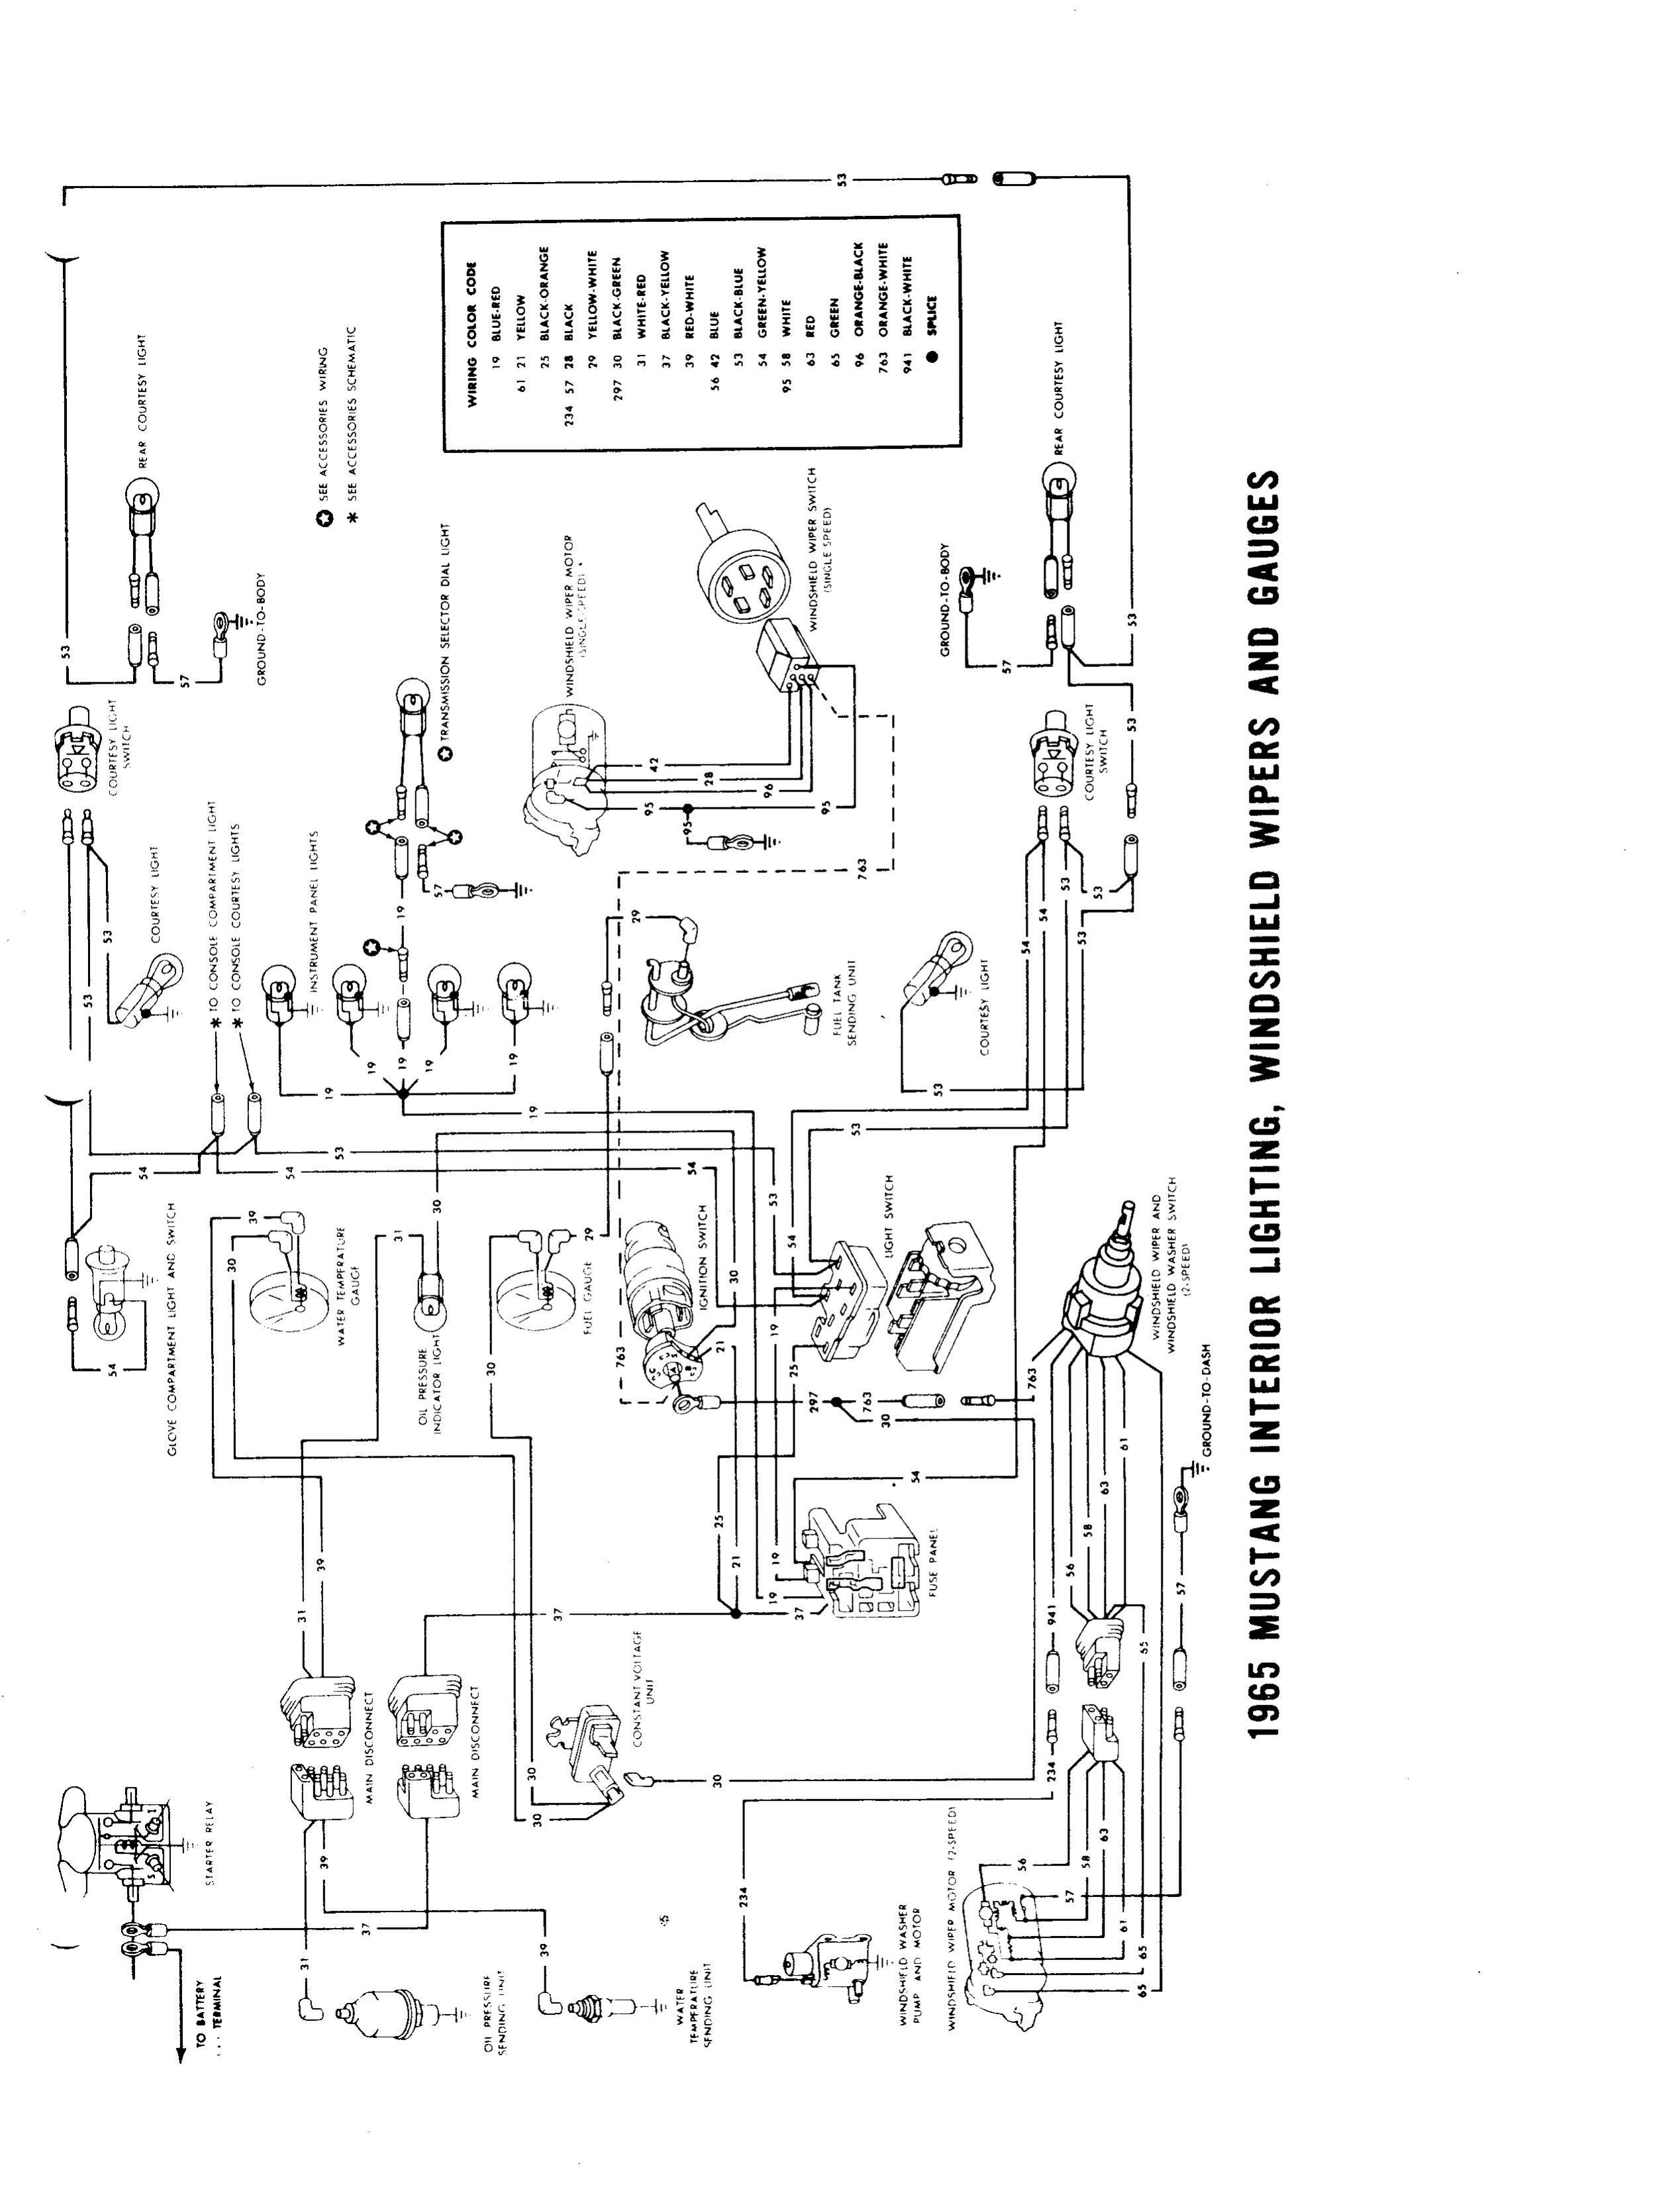 Engine Wiring Diagram 1986 Monte 305 Benq Wiring Diagram Full Hd Version Wiring Diagram Lott Of Engine Wiring Diagram 1986 Monte 305